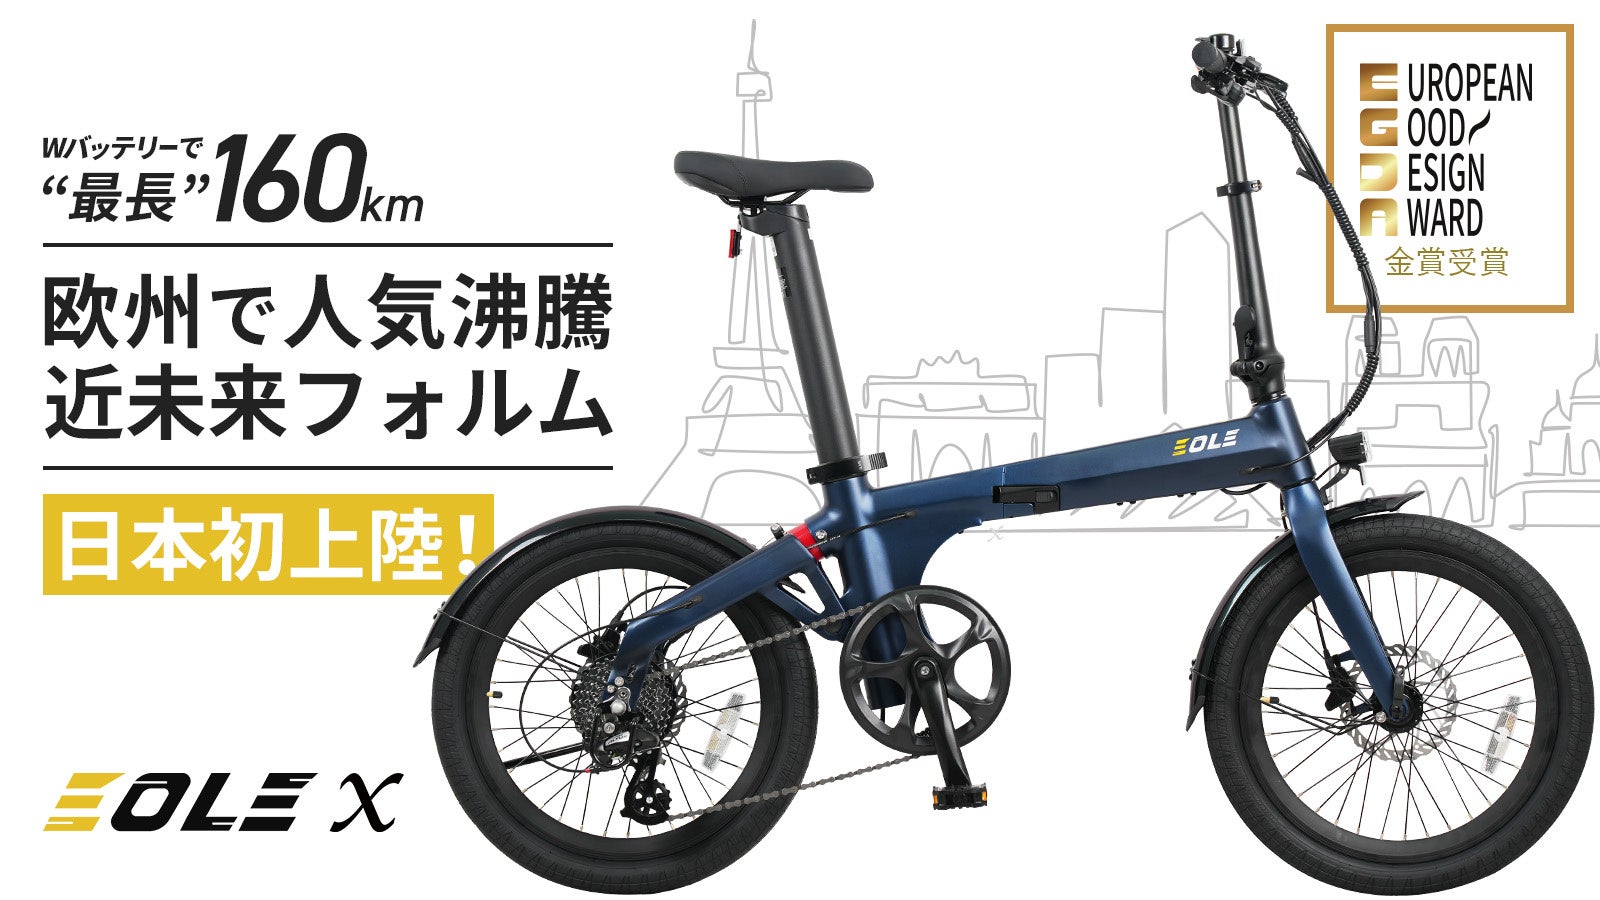 今ヨーロッパで話題の美しいデザインと高性能を兼ね備えた、近未来型折り畳み電動自転車！「Morfuns EOLE X」が応援購入サイトMakuakeにて日本初登場のサブ画像1